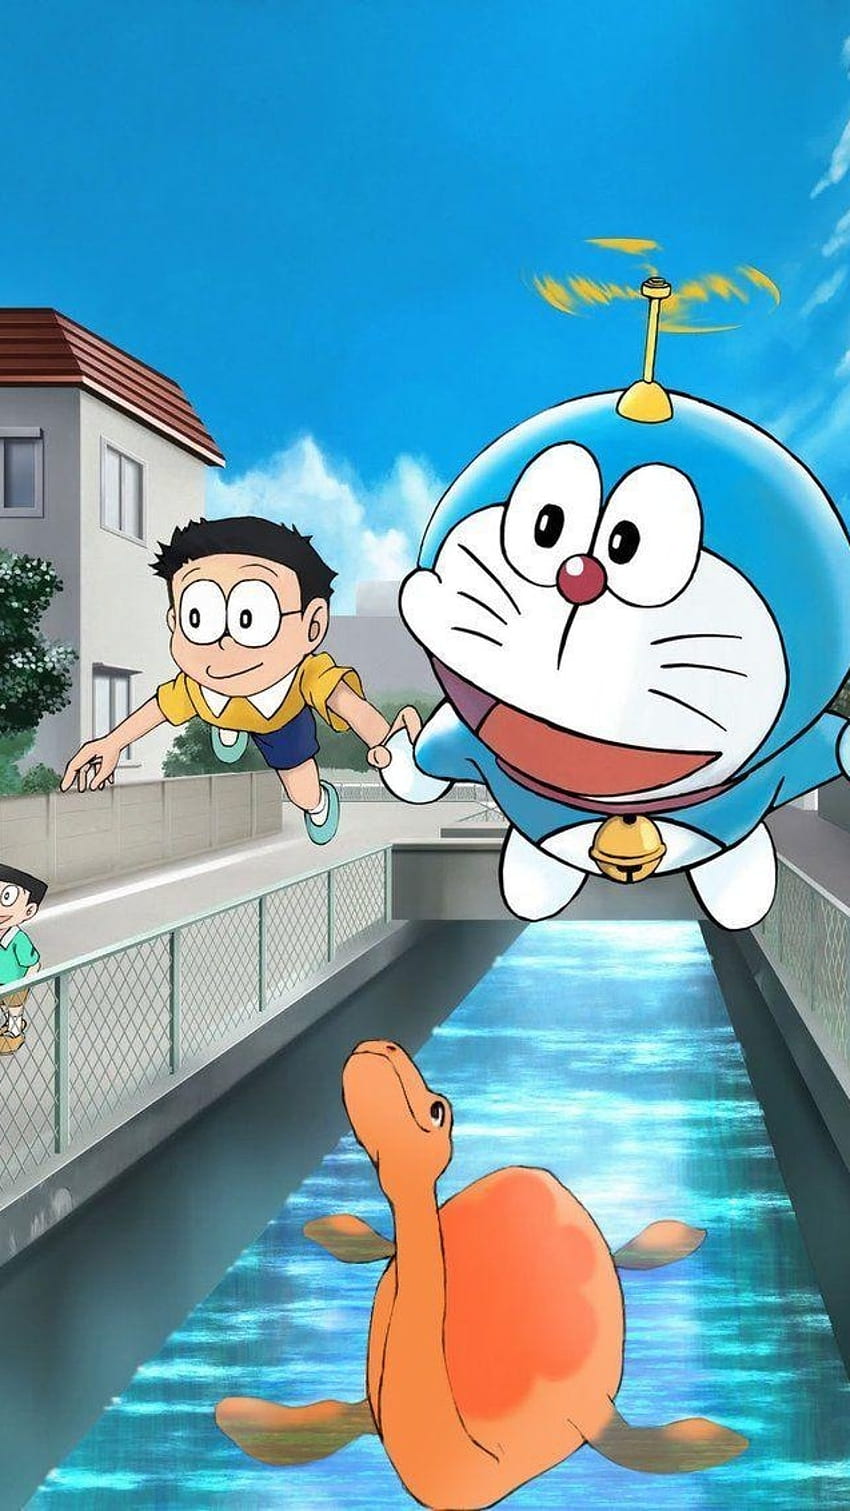 Shinchan Doraemon Hàng Không: Bộ phim Shinchan Doraemon Hàng Không là một sự kết hợp giữa hai nhân vật nổi tiếng nhất trong lịch sử anime Nhật Bản. Bộ phim mang đến những tràng cười sảng khoái và nhiều trải nghiệm mới lạ. Hãy cùng xem và thư giãn với bộ phim này để tăng thêm niềm vui và năng lượng trong cuộc sống hàng ngày nhé!